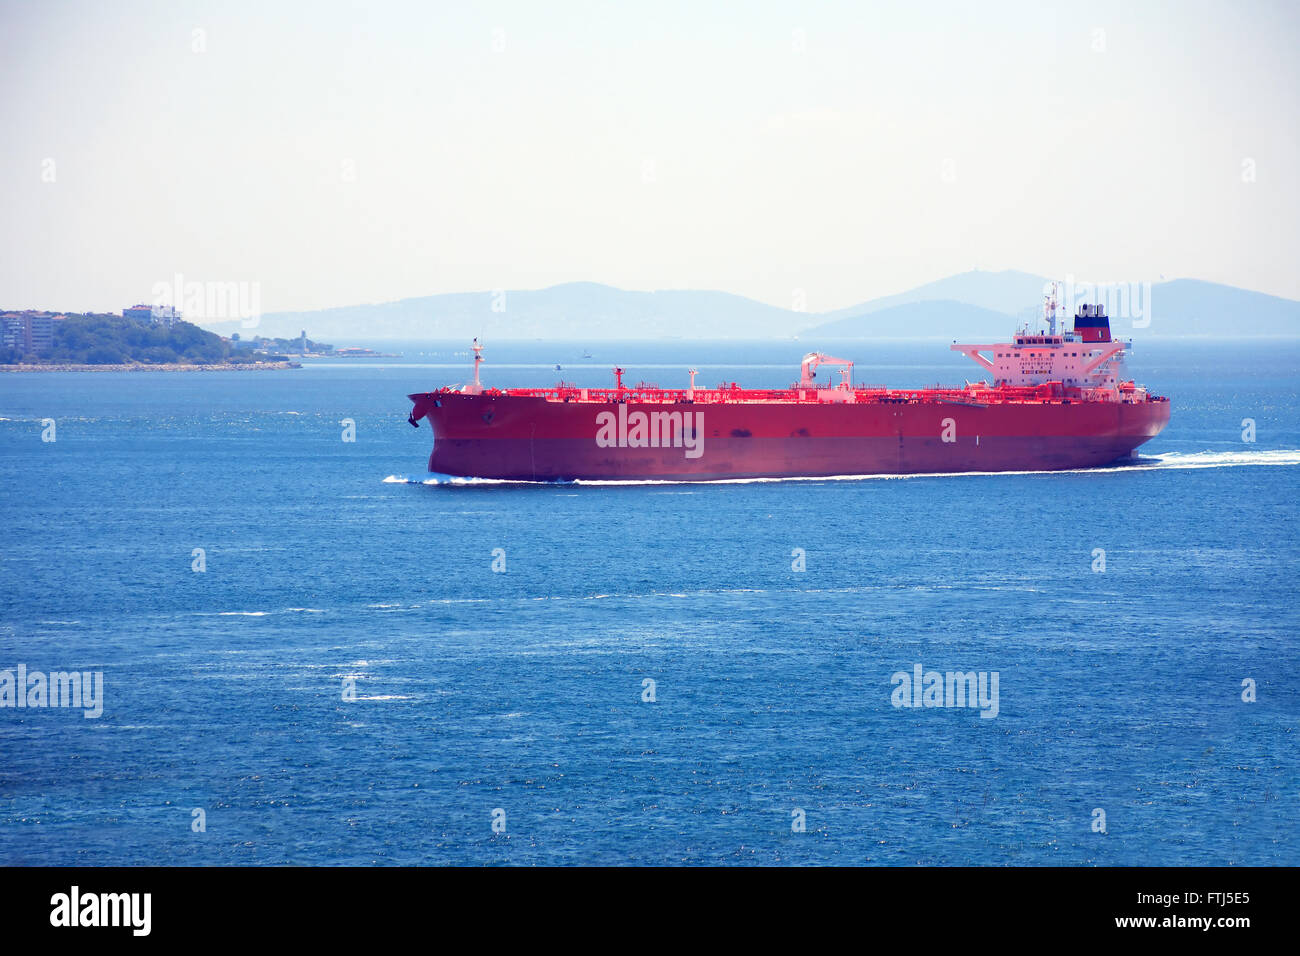 Océano rojo grande buque náuticas en el Mar de Mármara, Turquía Foto de stock